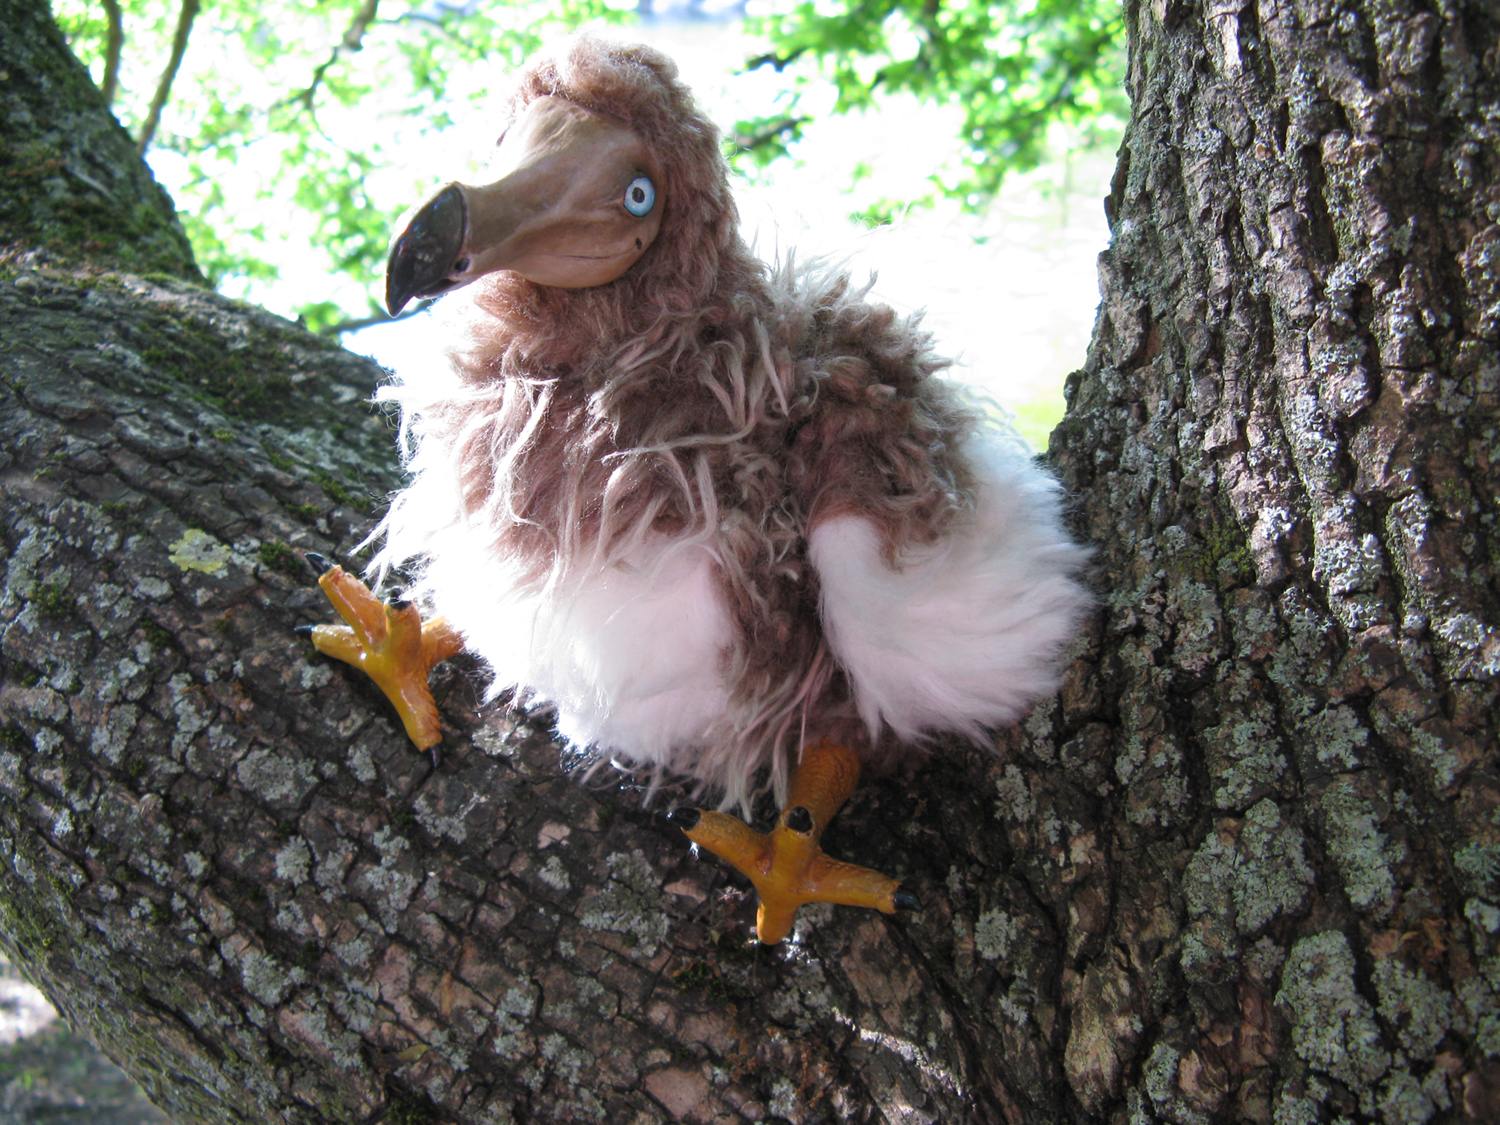 Meet the Dodo Bird